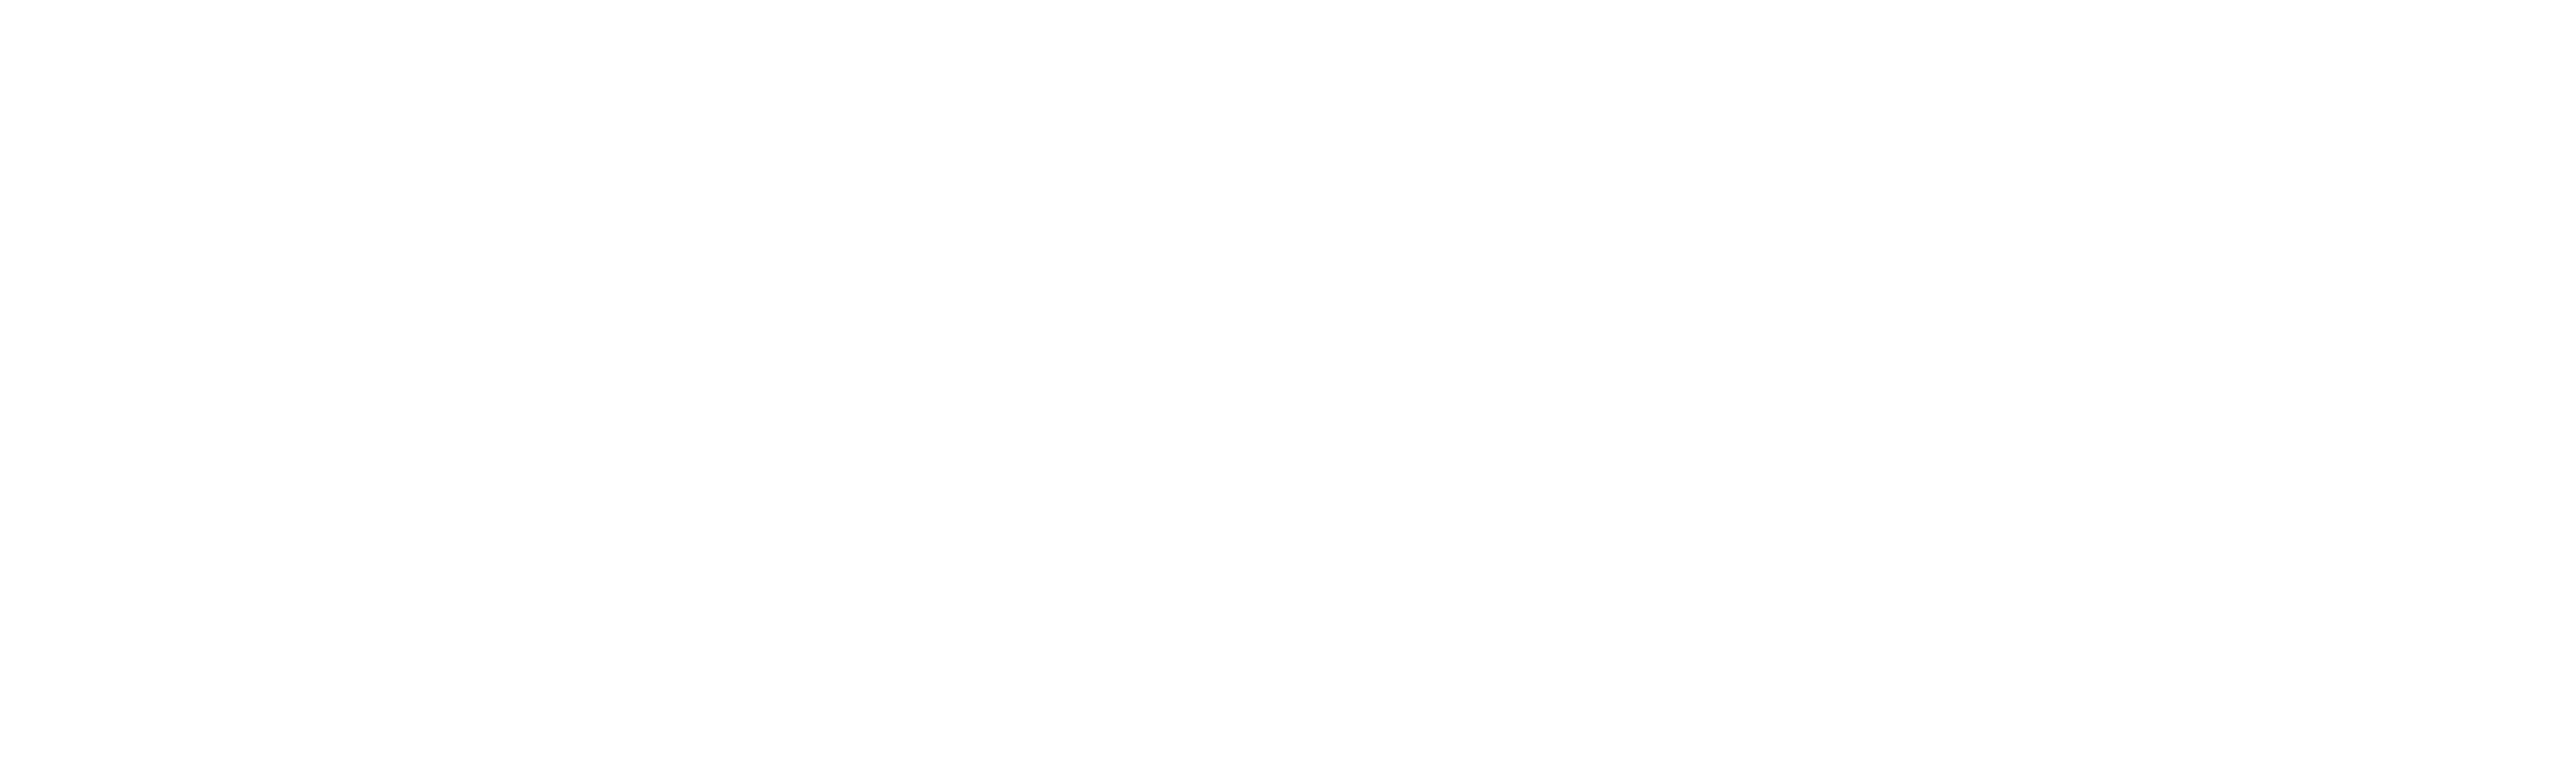 Png Fil Vordingborg Logo Negativ